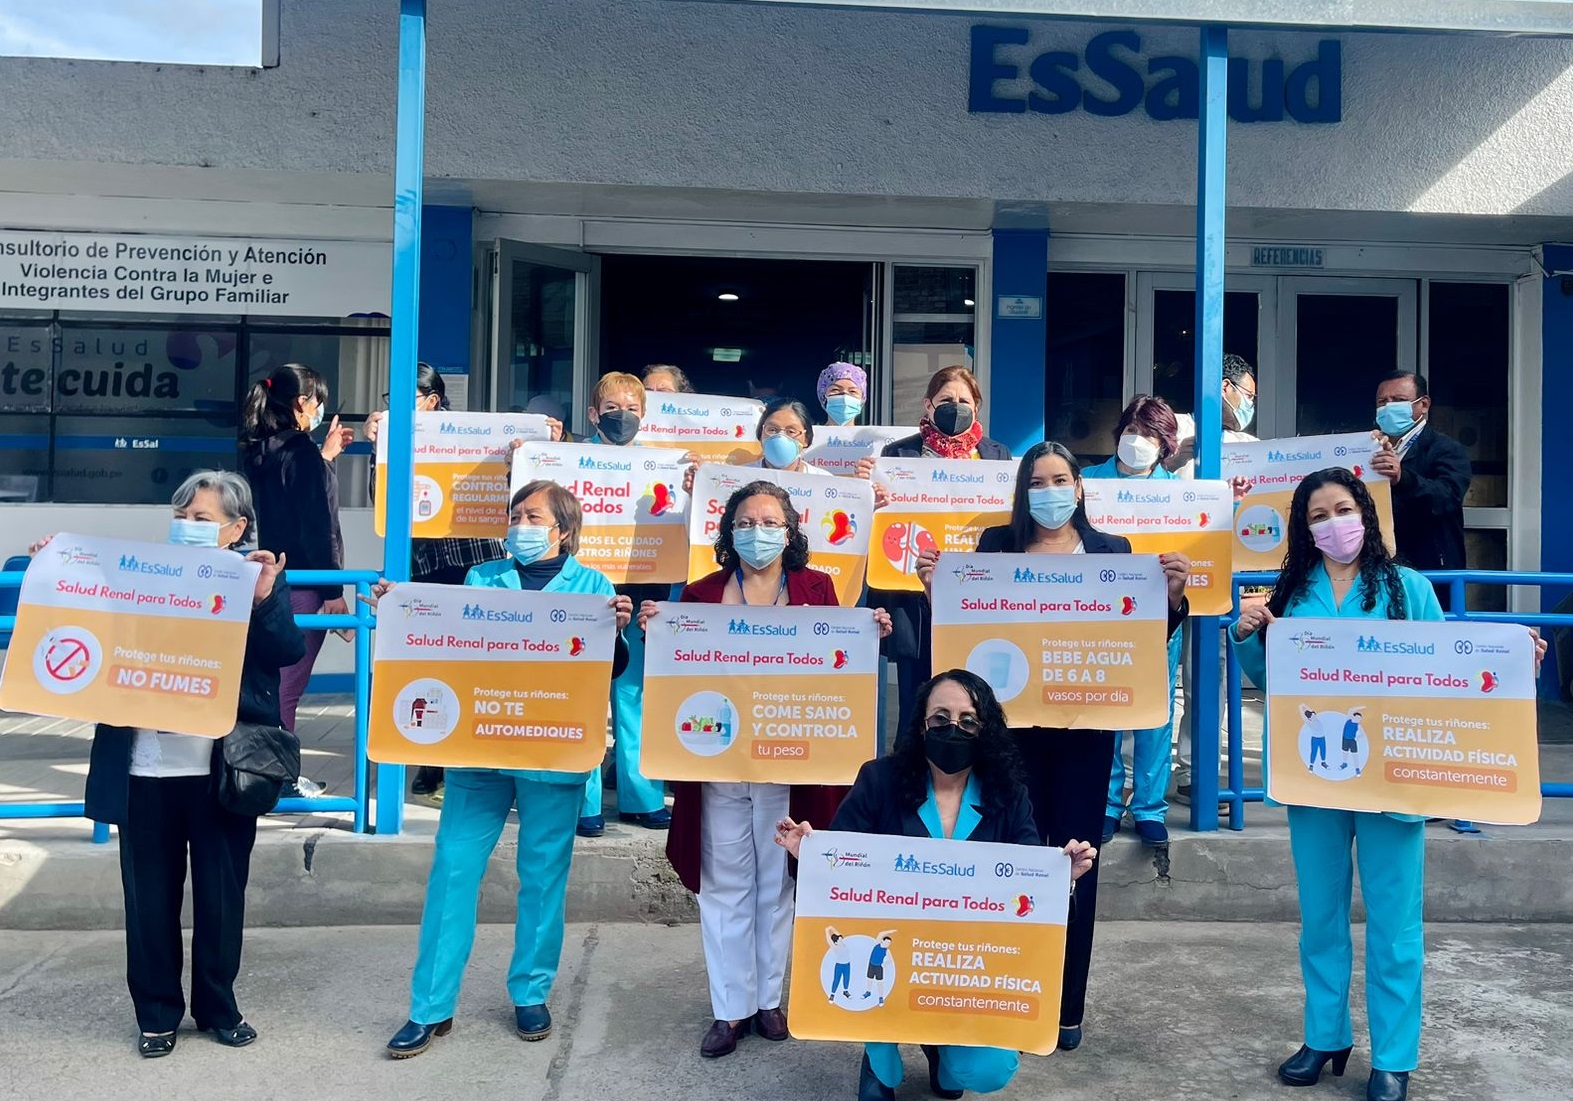 EsSalud Cajamarca inaugura Preventorio de Salud Renal que beneficiará a más 263 mil asegurados de toda la región